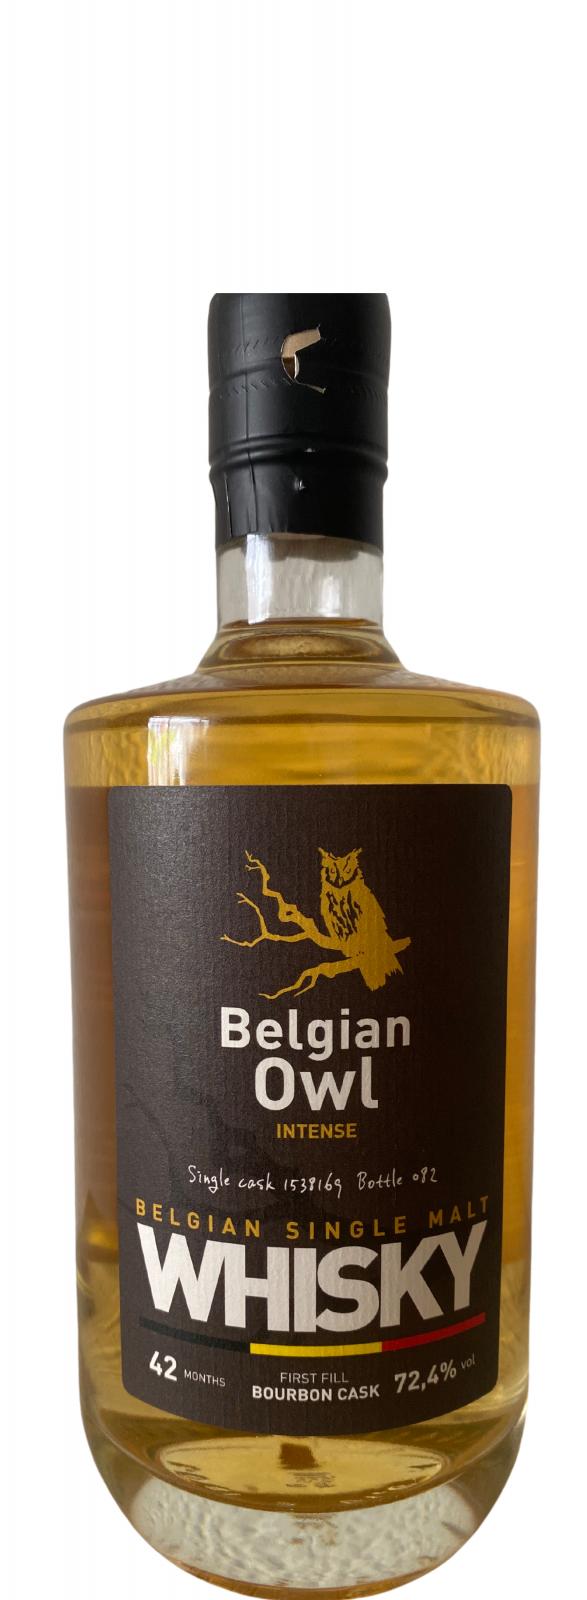 The Belgian Owl 42 months Bourbon cask #1538169 72.4% 500ml